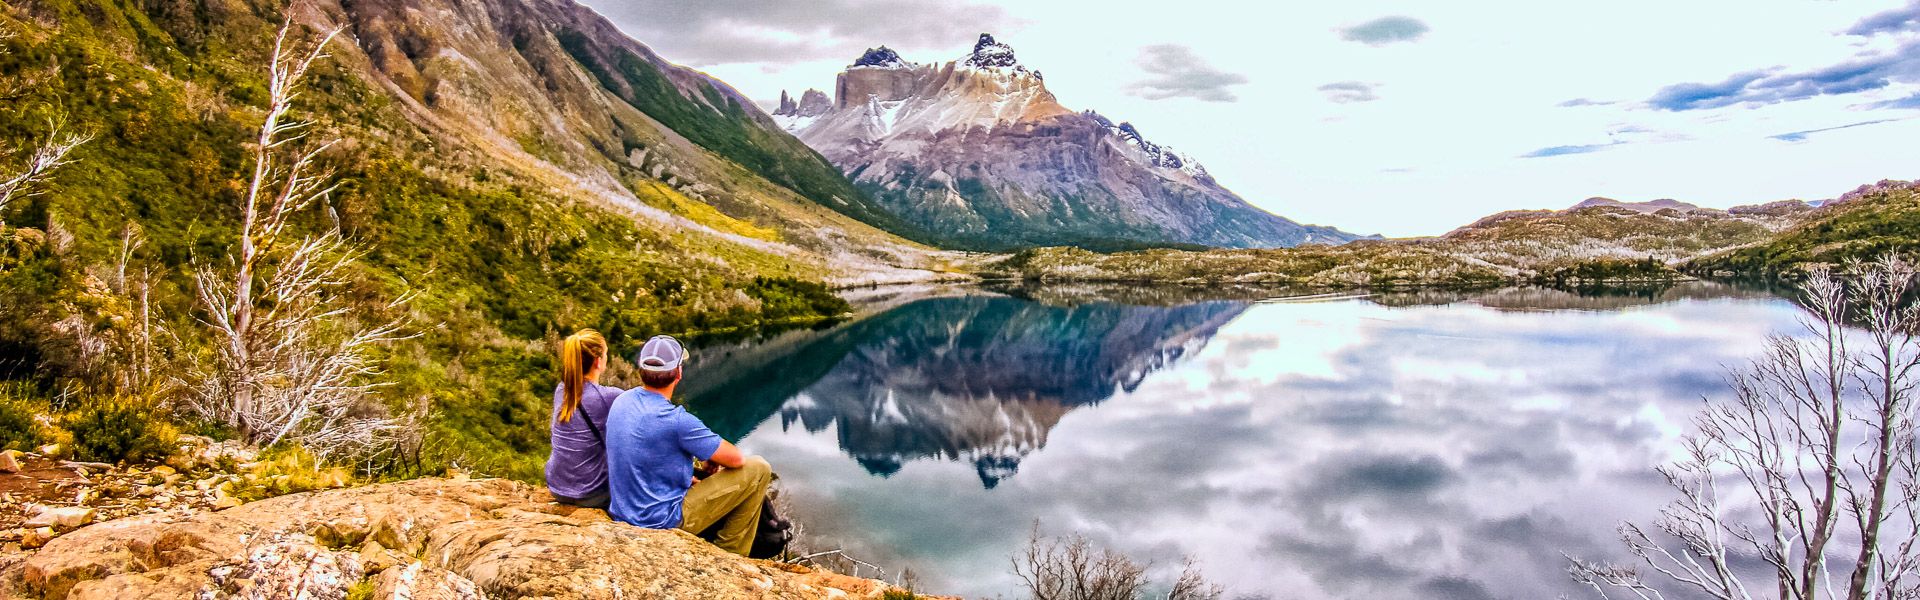 Torres Del Paine - Panoramablick |  Rodrigo Perez Dia, EyeEm / Chamleon